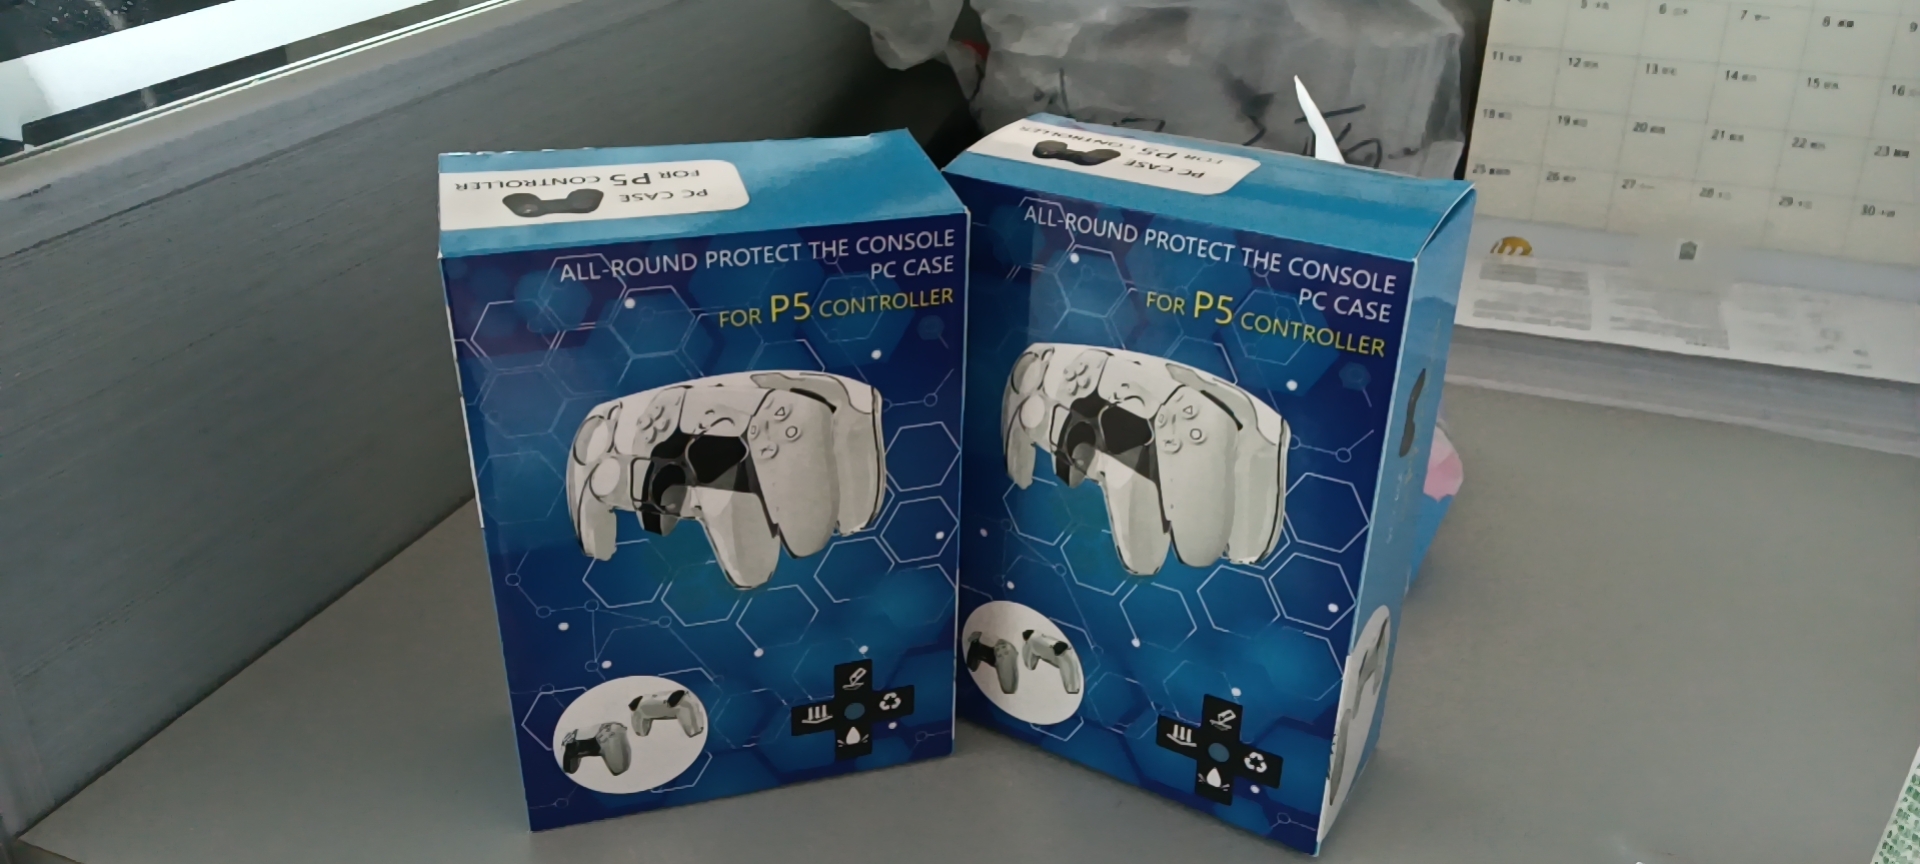 PS5游戏手柄彩盒价格  PS5游戏手柄彩盒供应商 PS5游戏手柄彩盒定制